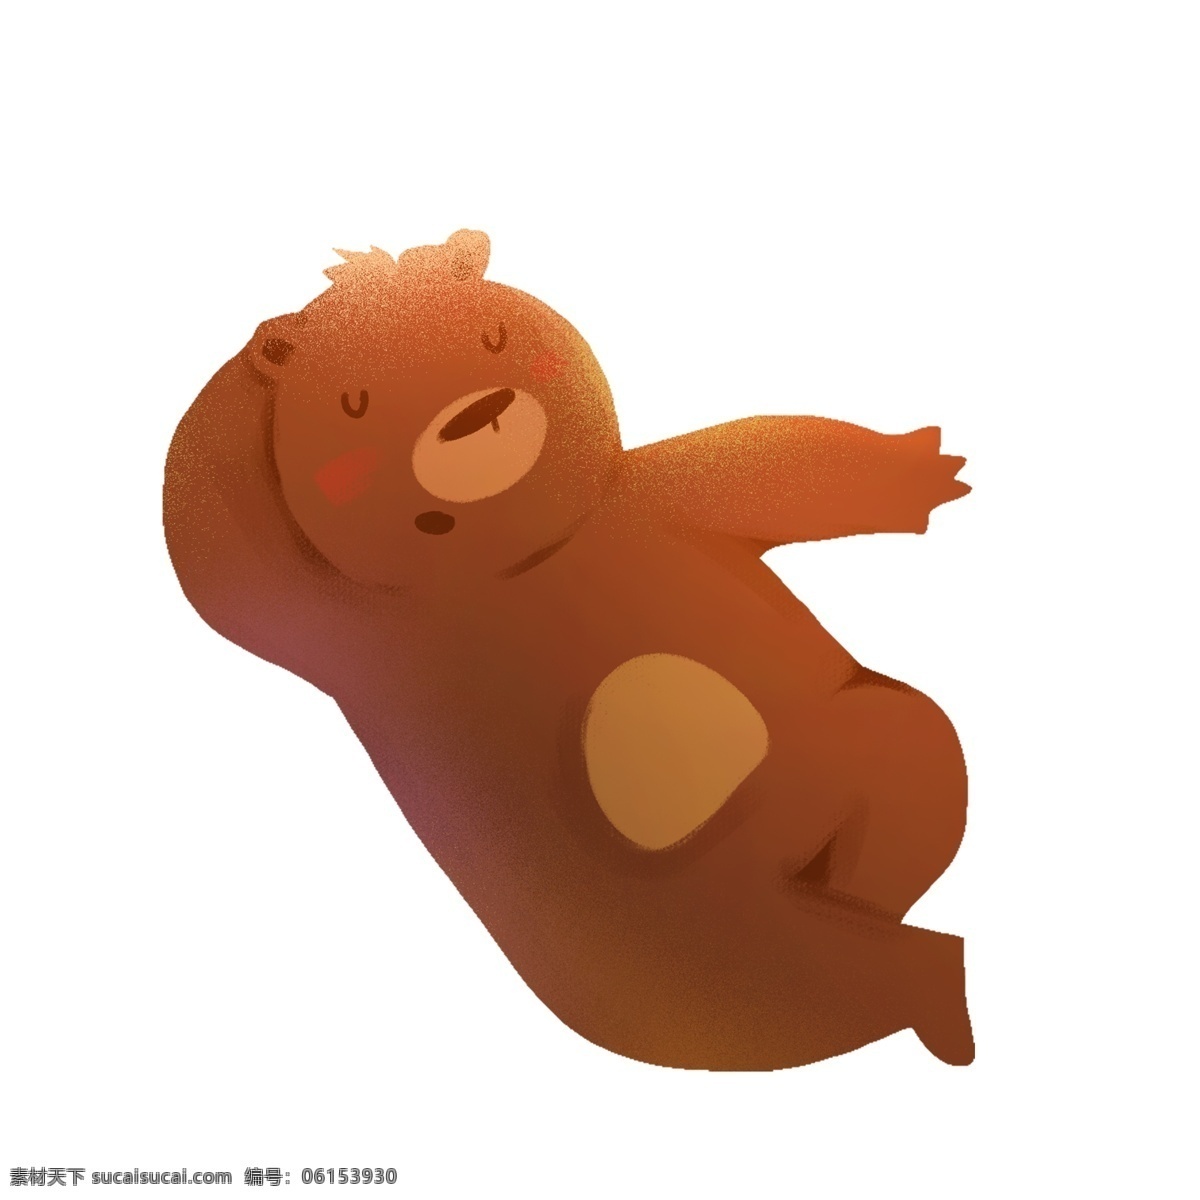 枕 胳膊 小 熊 免 扣 图 睡觉 卡通 棕色熊 熊免扣图 枕着胳膊 小熊免扣图